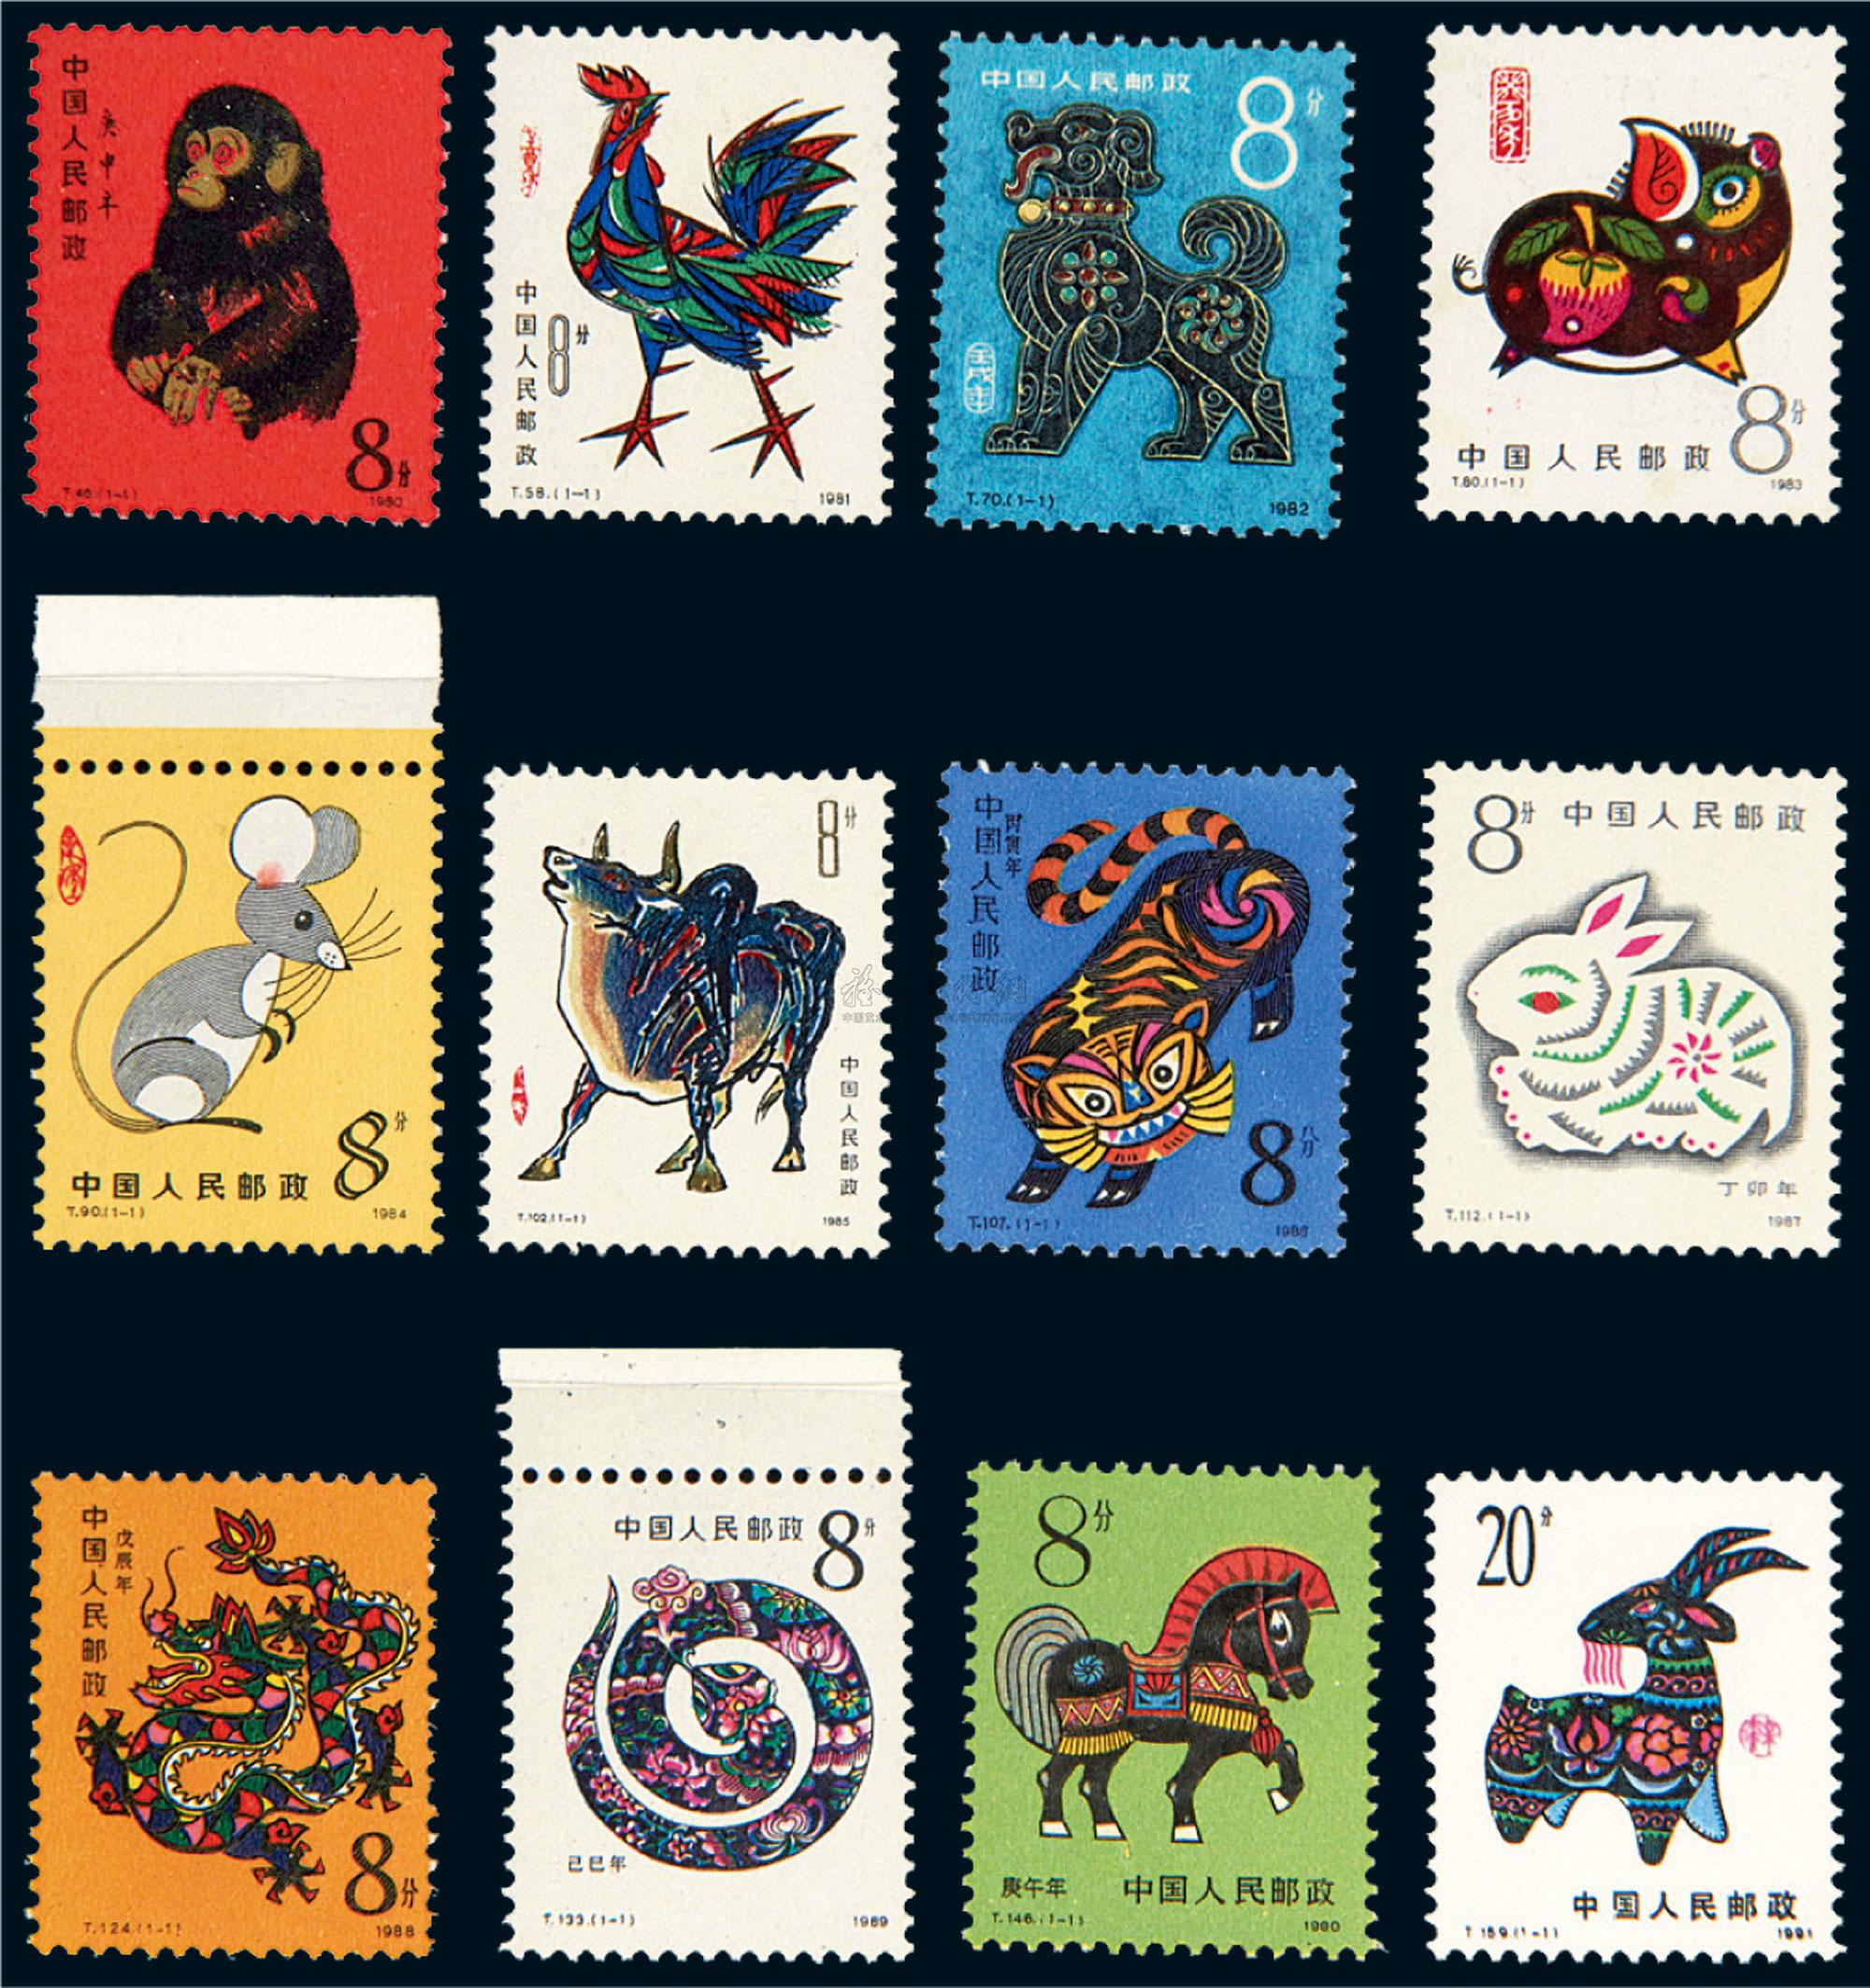 第一轮十二生肖邮票共计十二枚